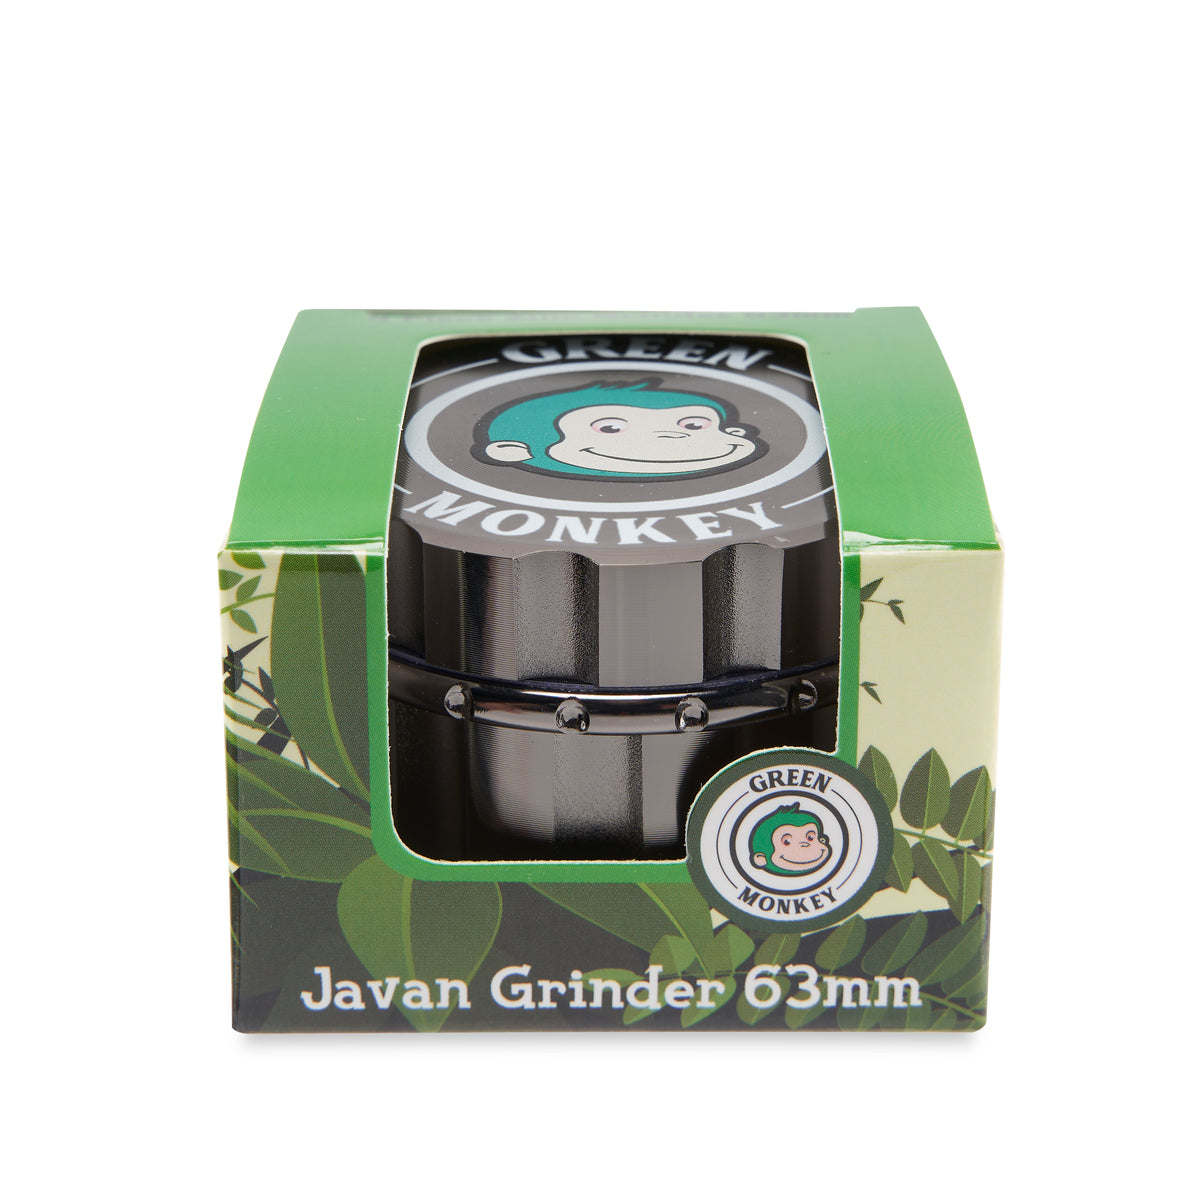 Green Monkey Grinder - Javan - 63mm - Gunmetal